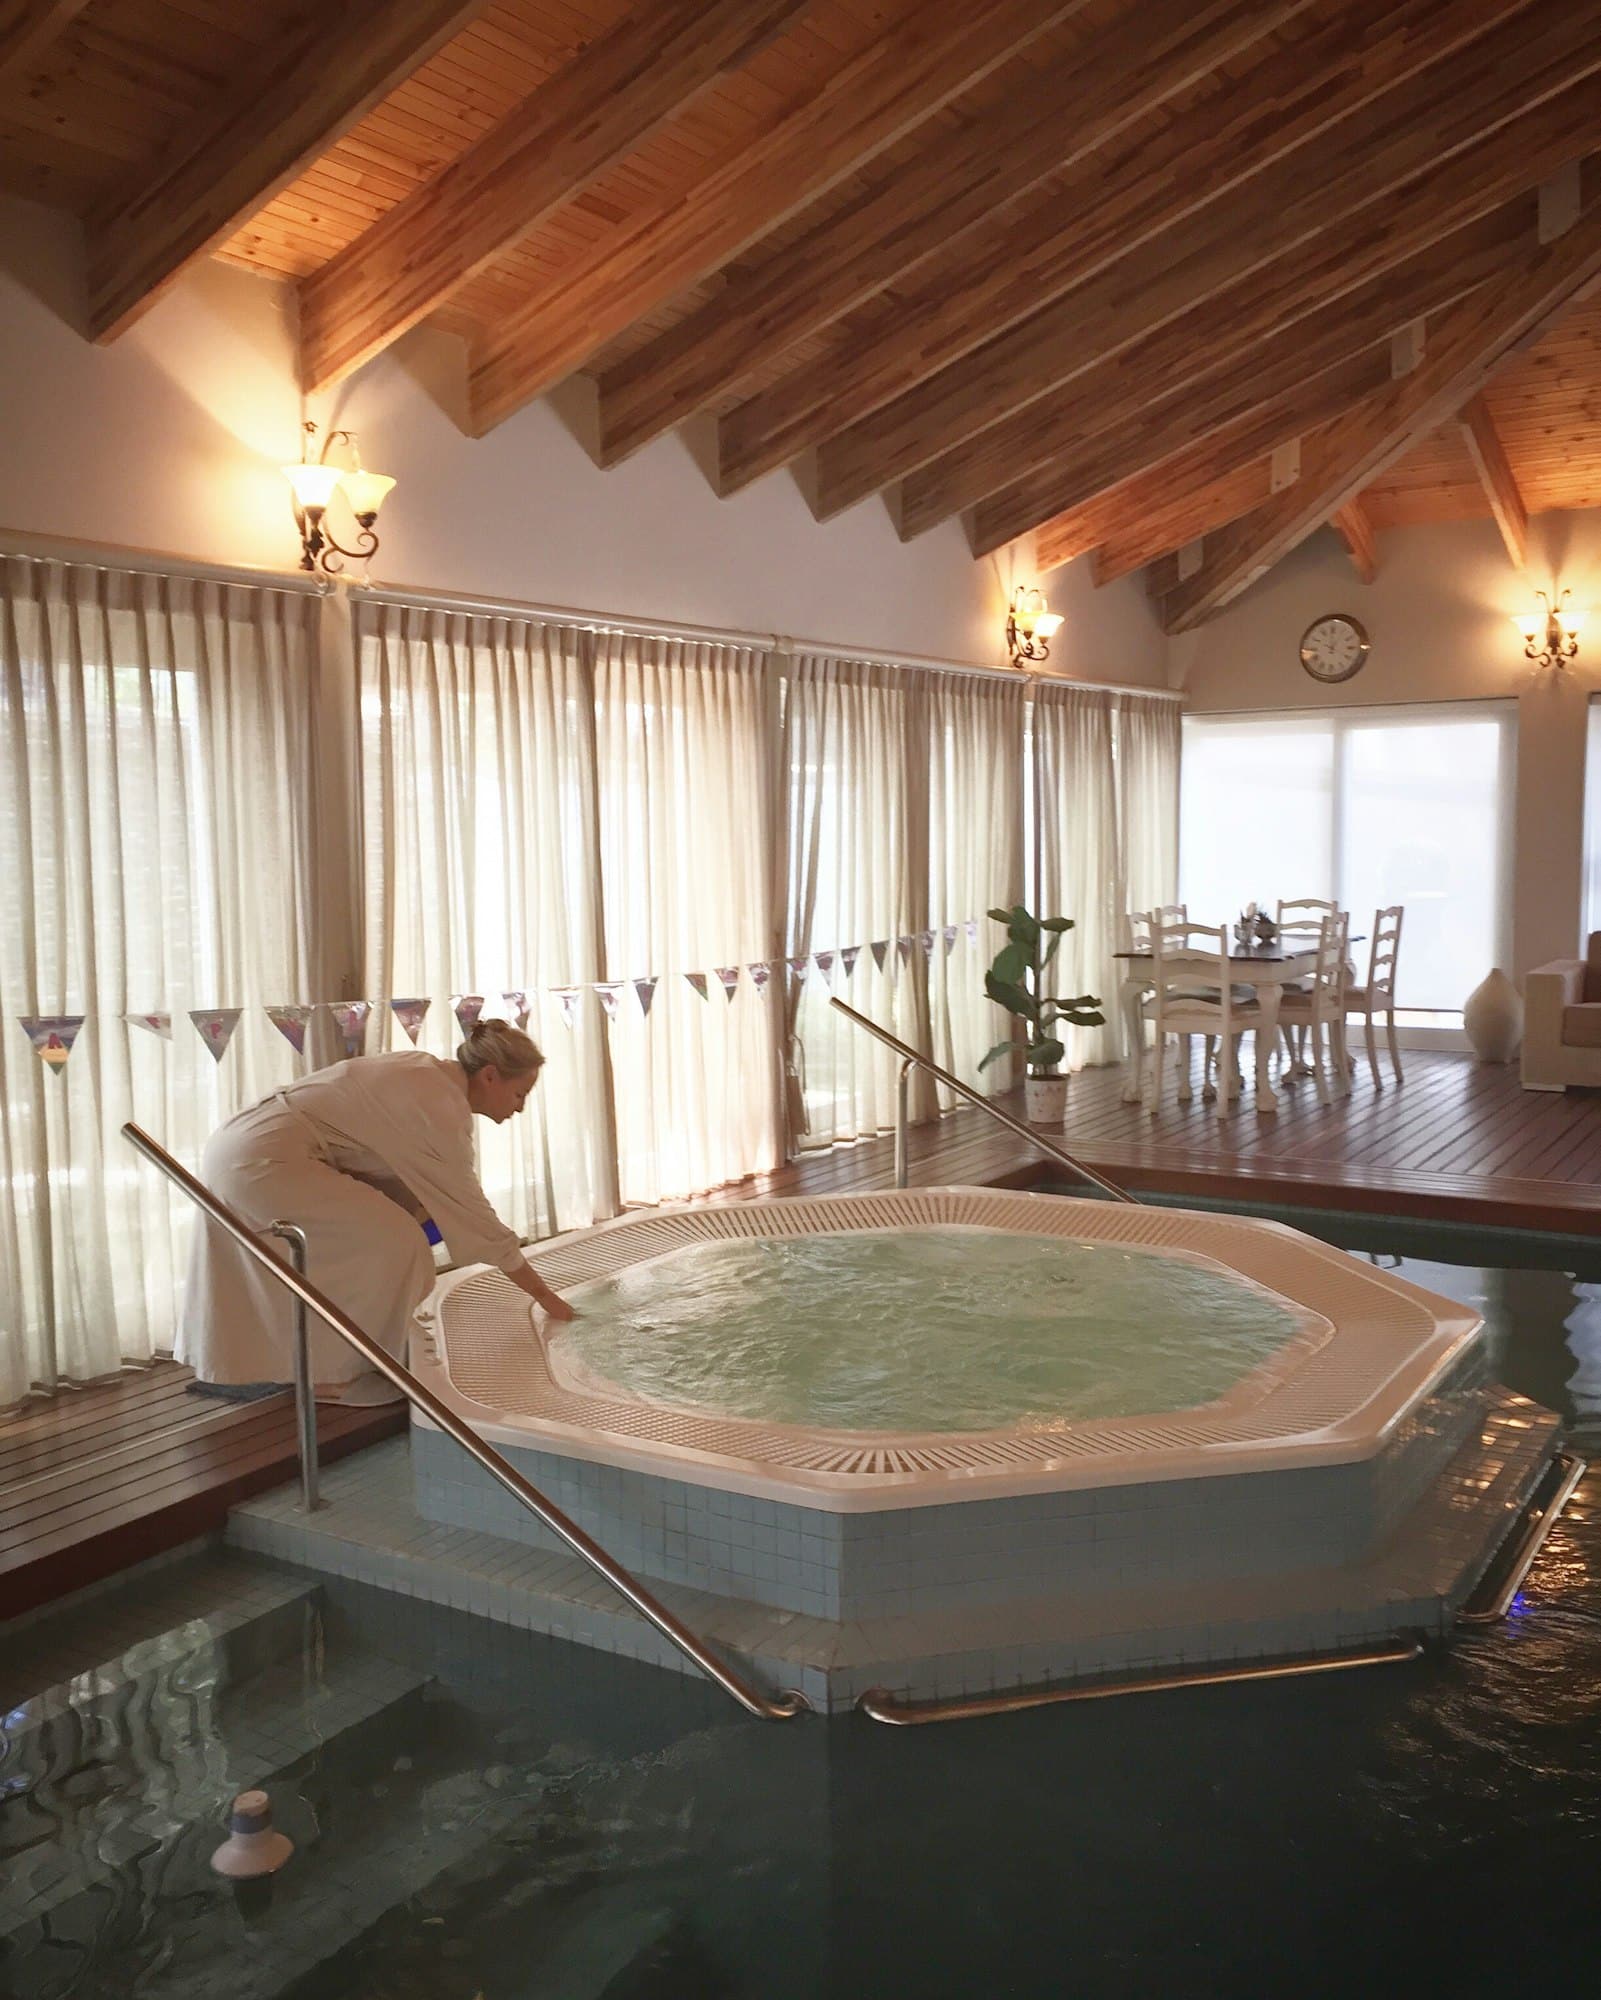 Découvrez le luxe : profitez d’un spa de palace chez vous !